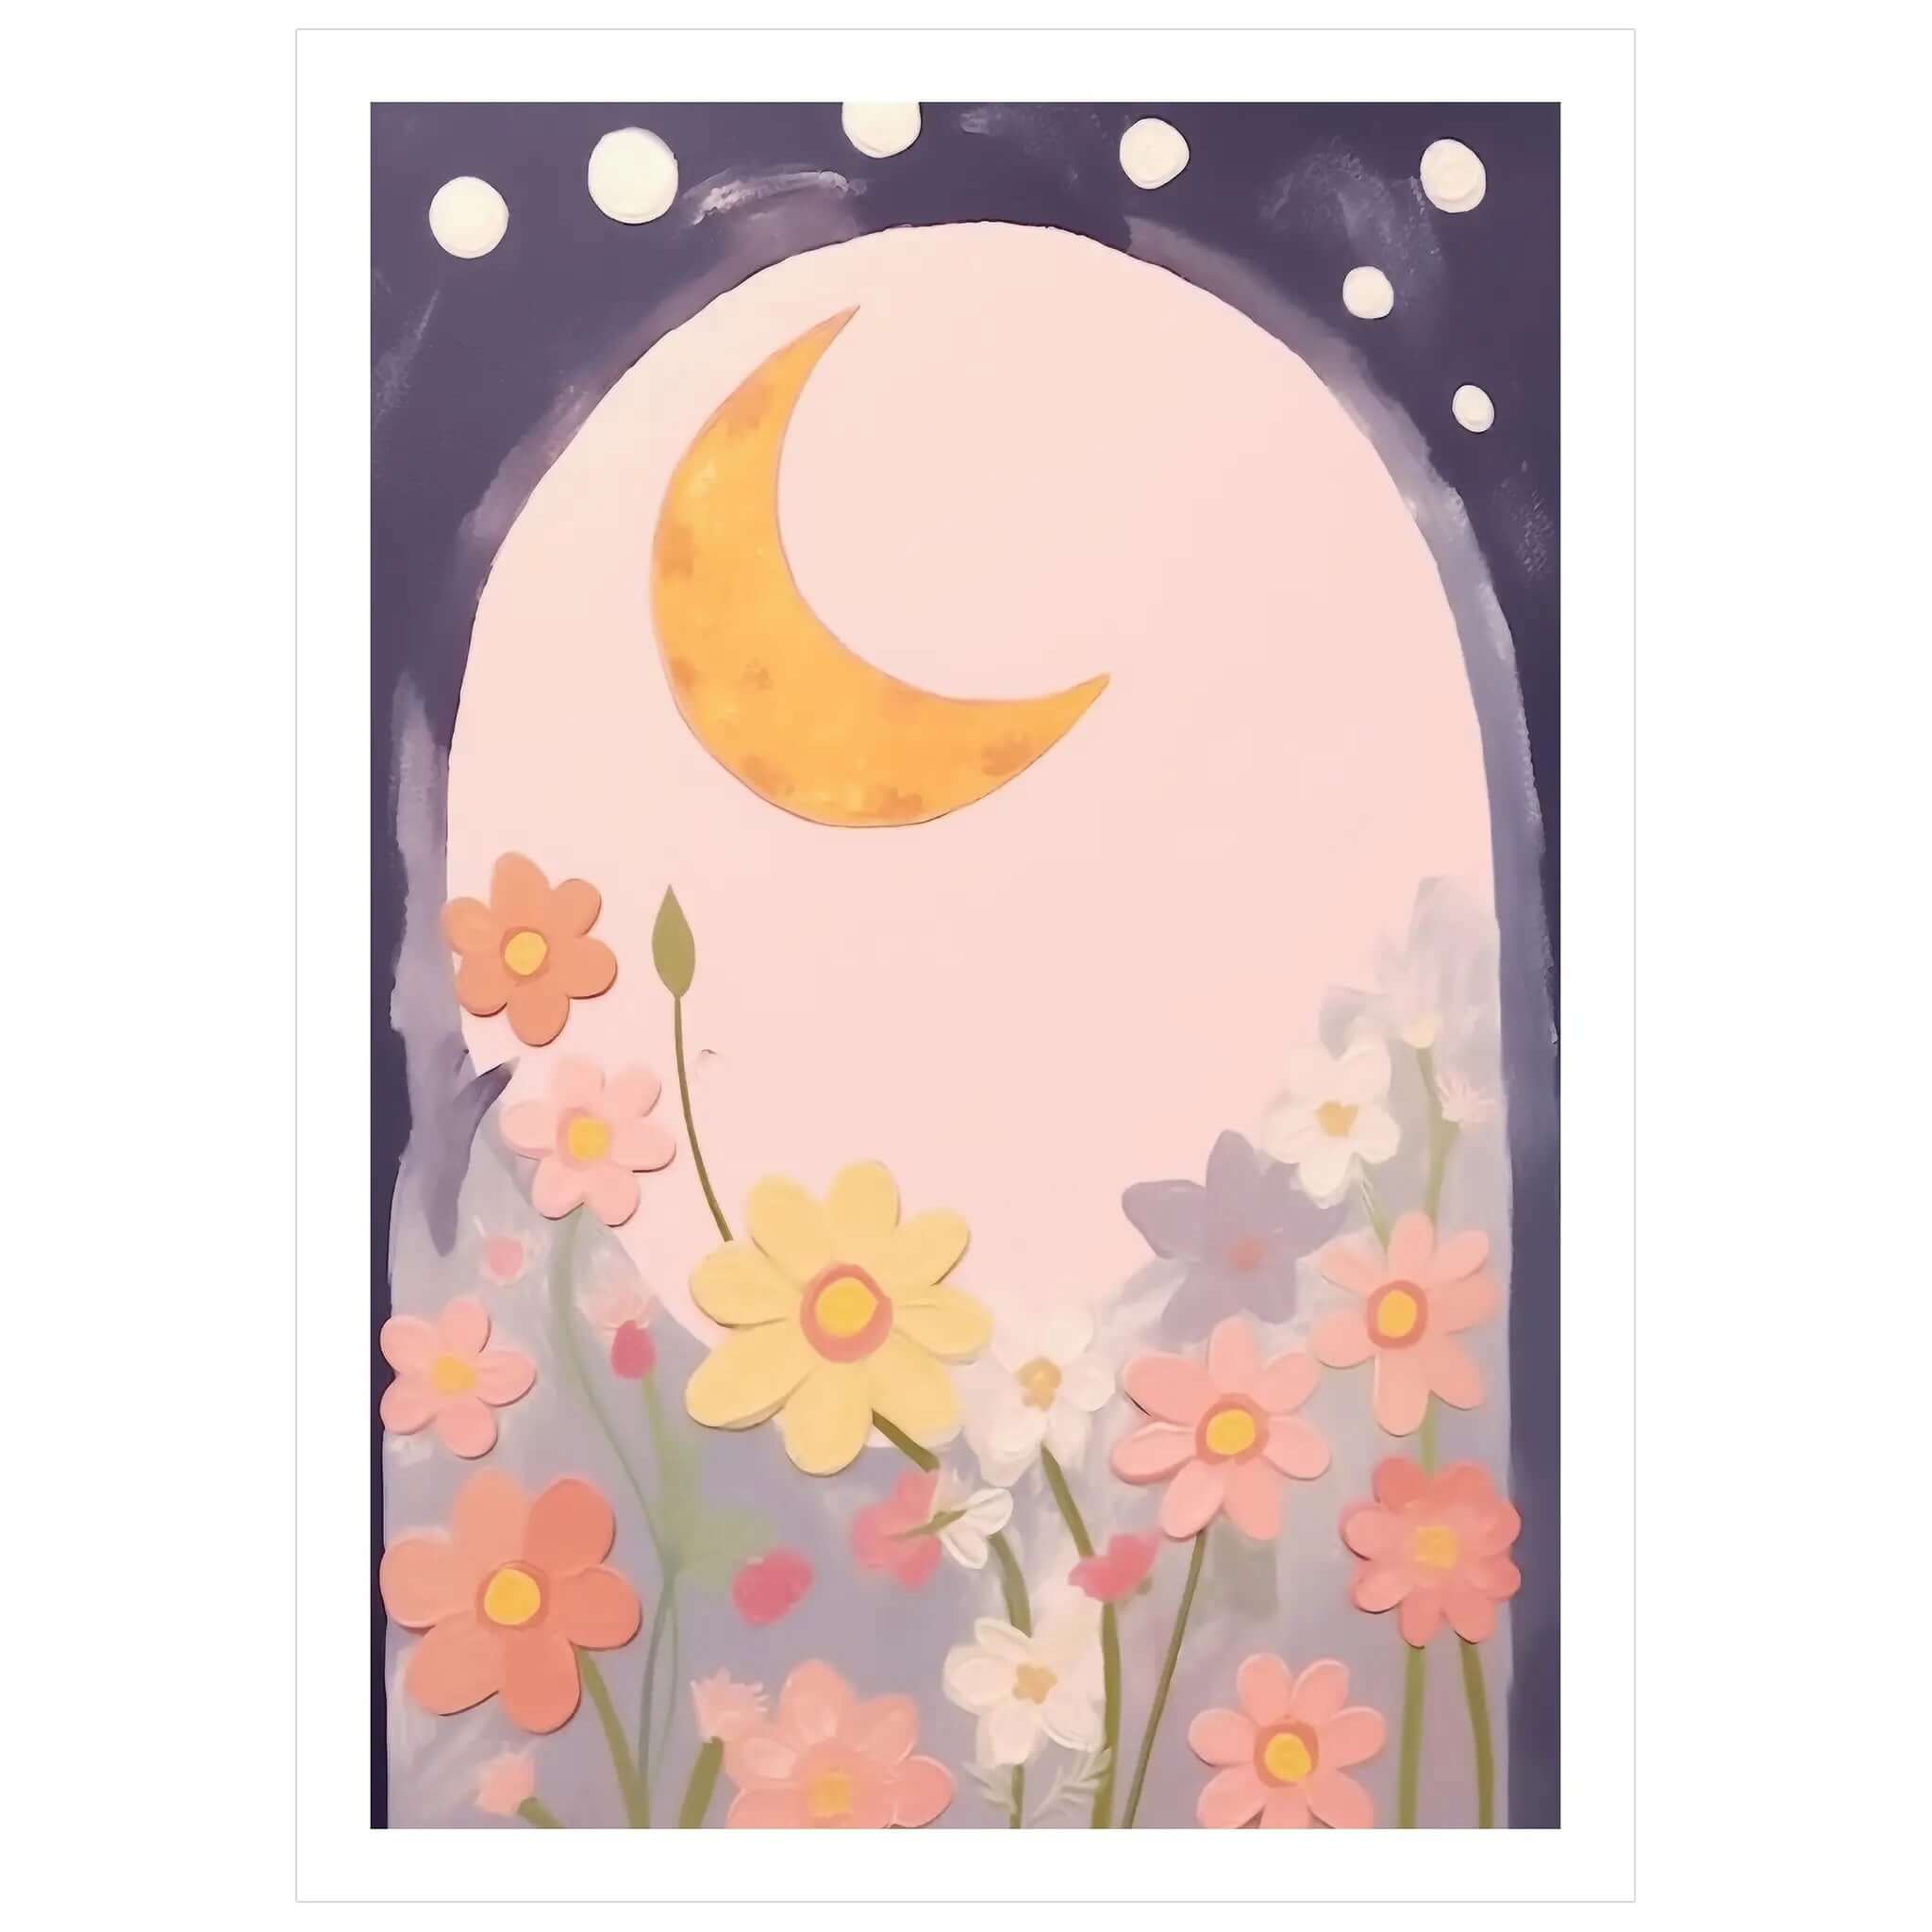 Lunar Florals No. 2